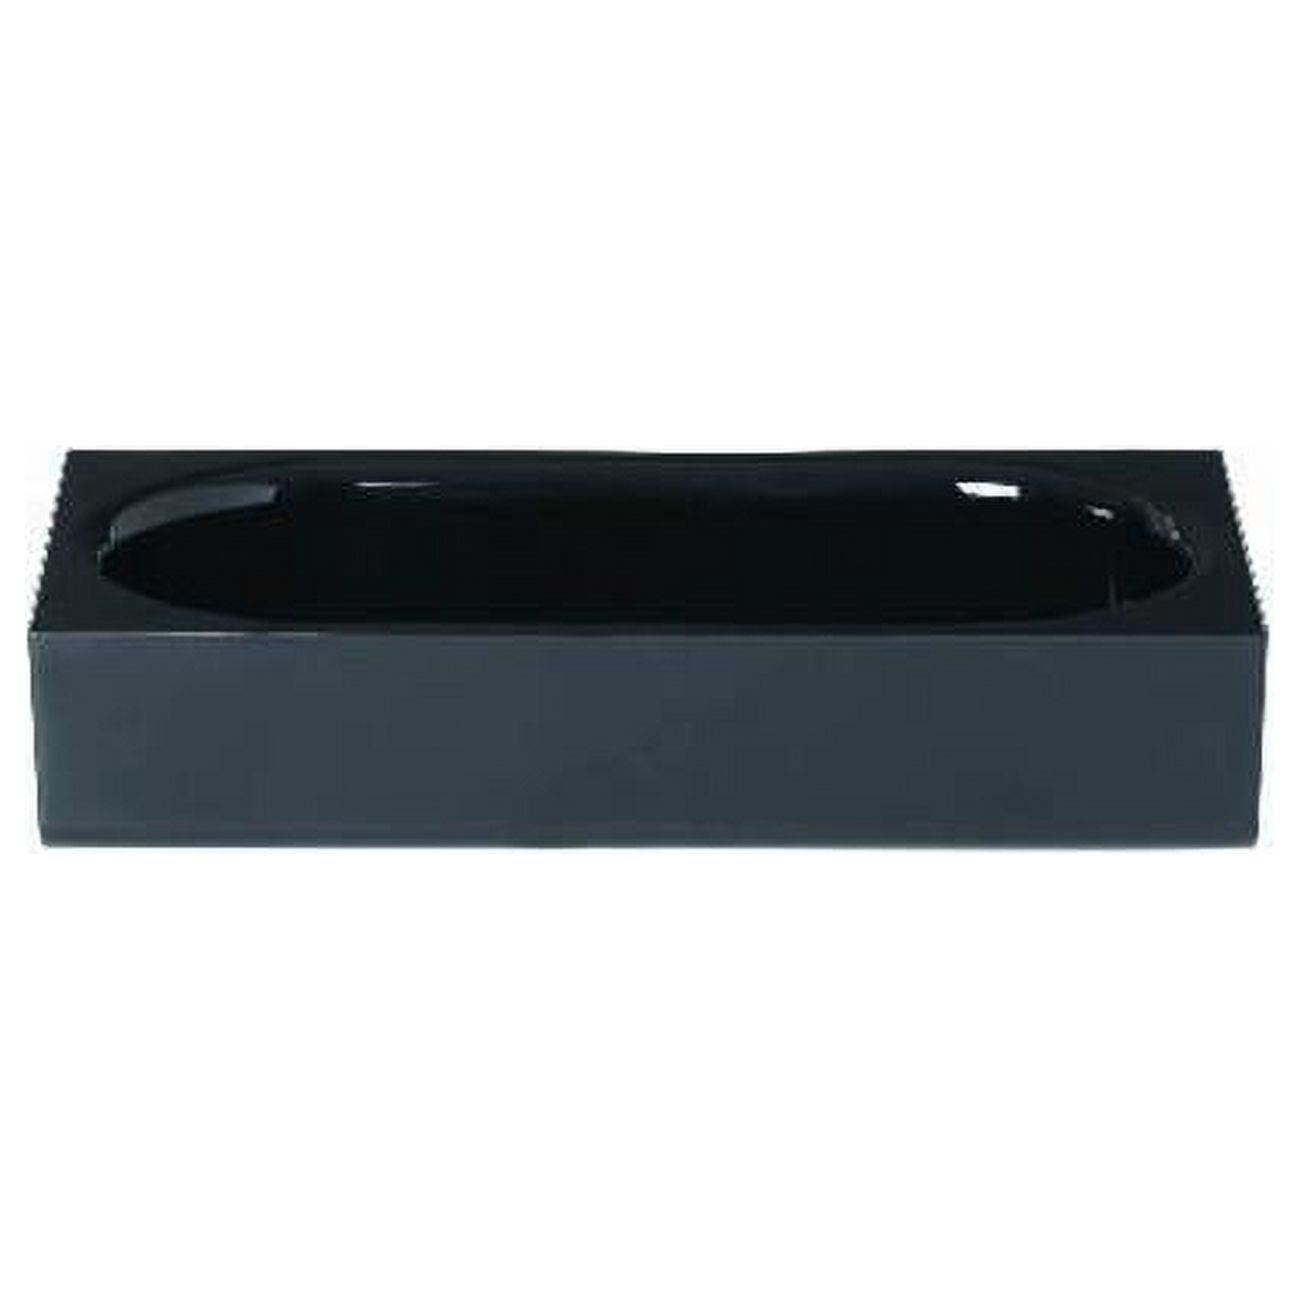 Sleek Modo Black Acrylic Bathroom Organizer Tray